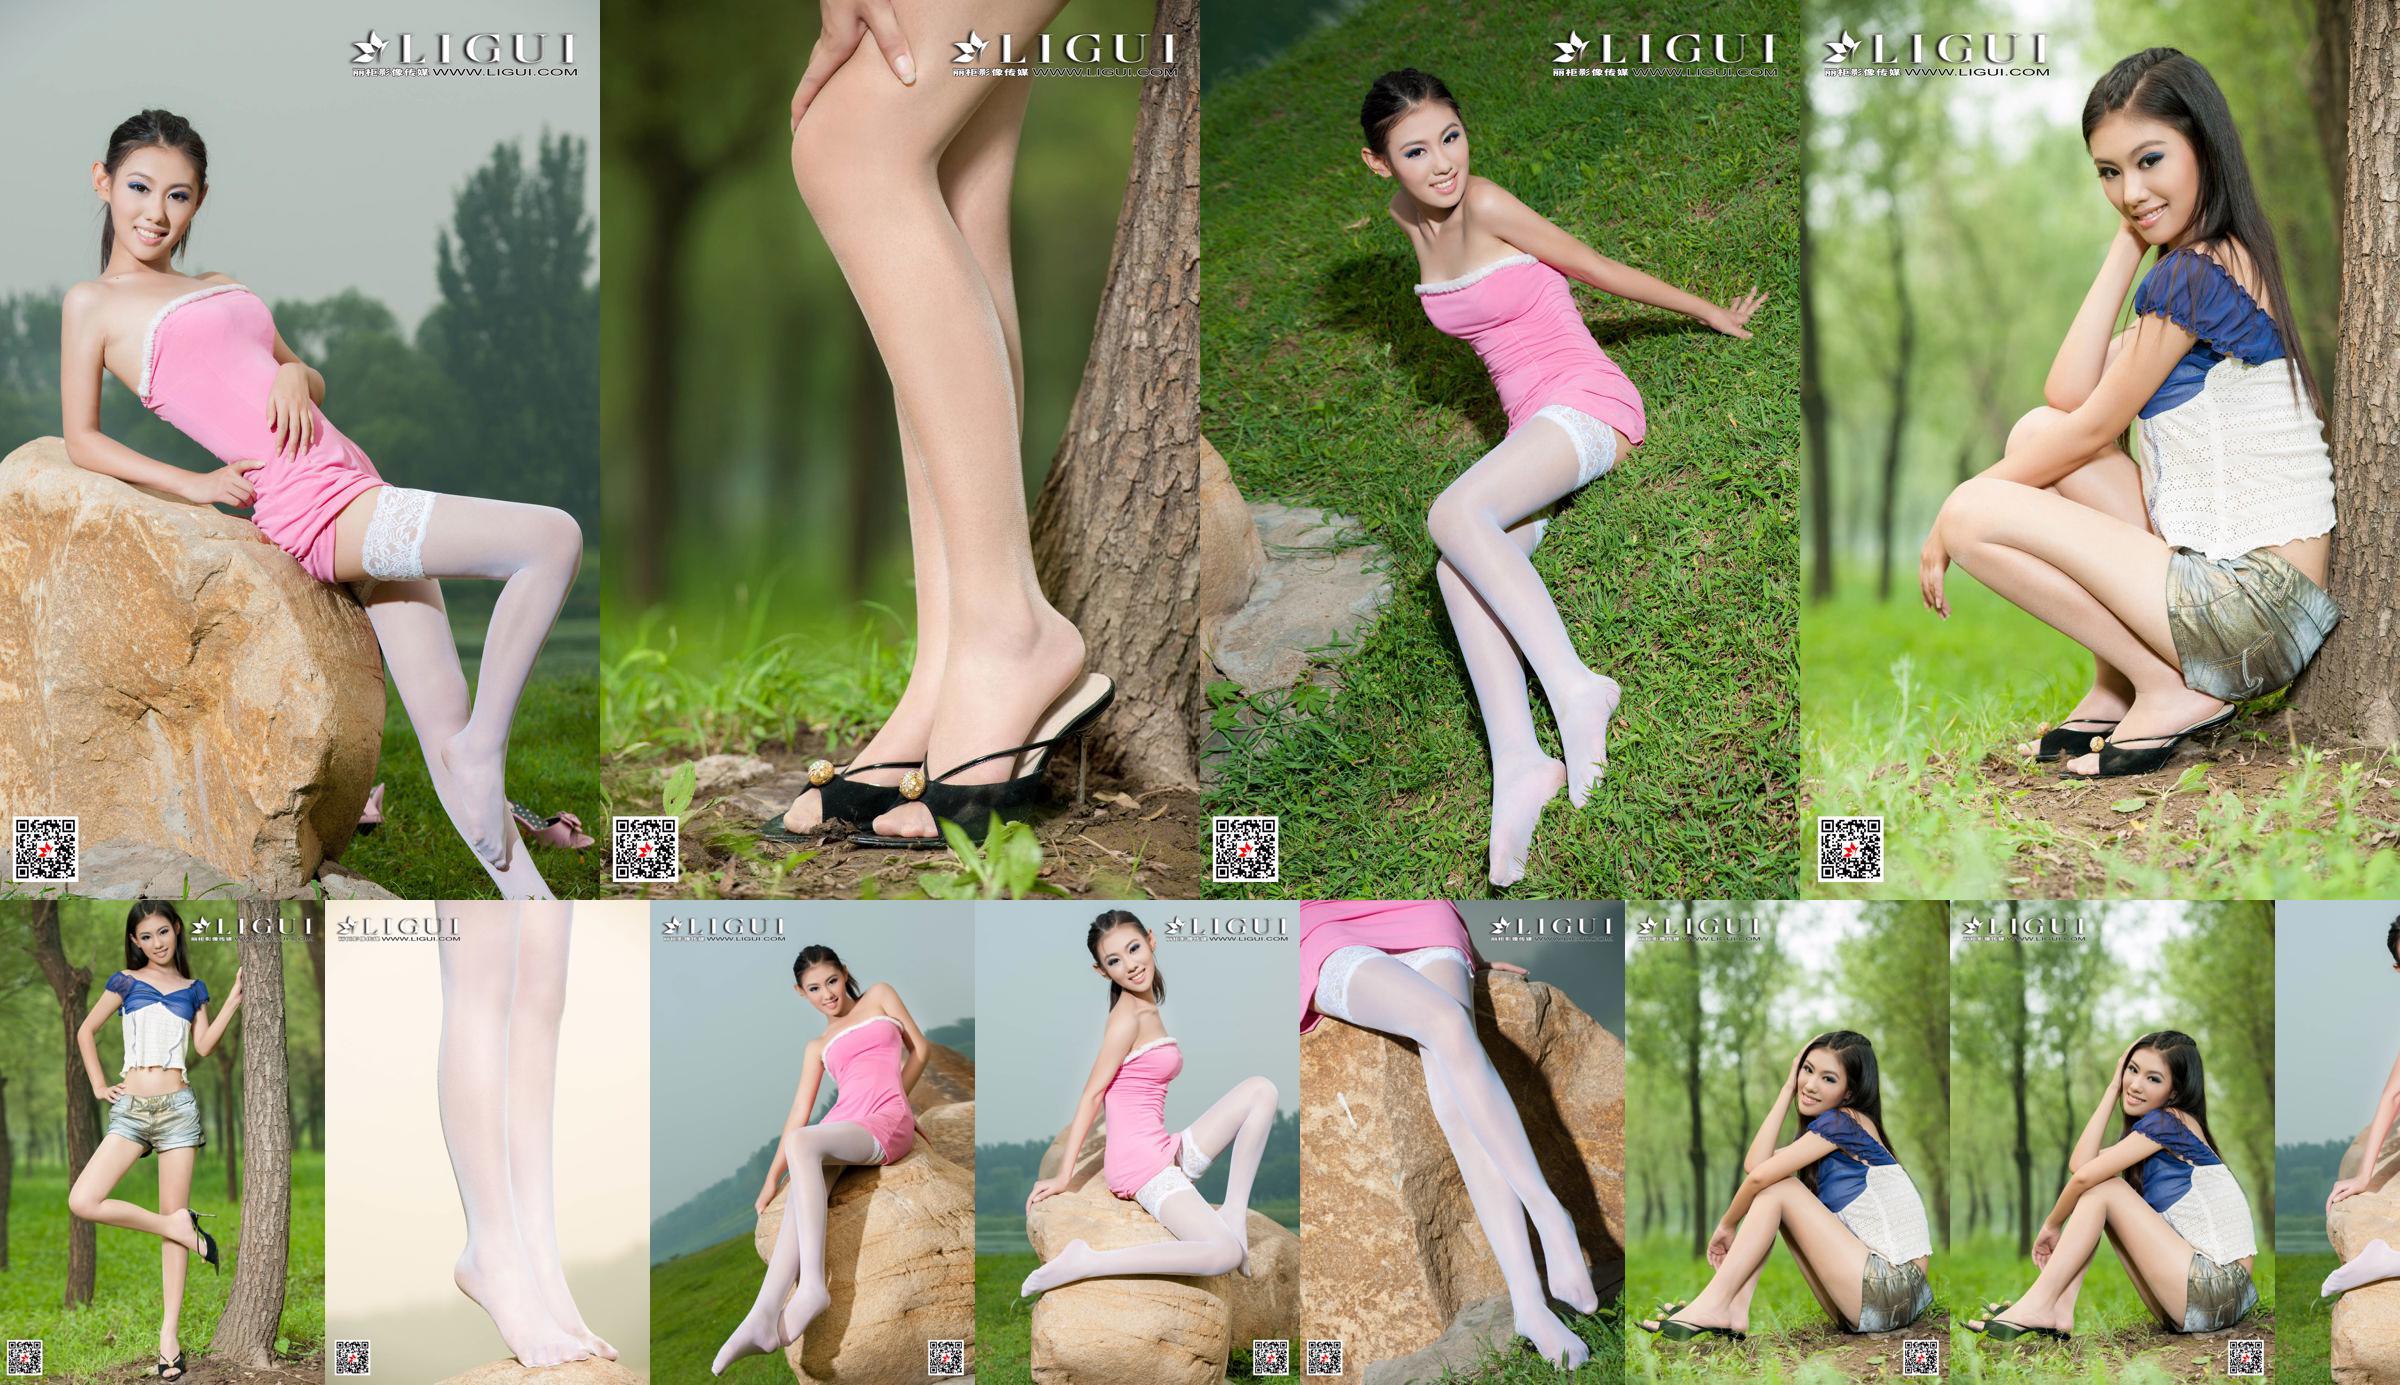 [丽 柜 Ligui] Model Wei Ling "Long Leg Girl" Mooie benen No.68d337 Pagina 8